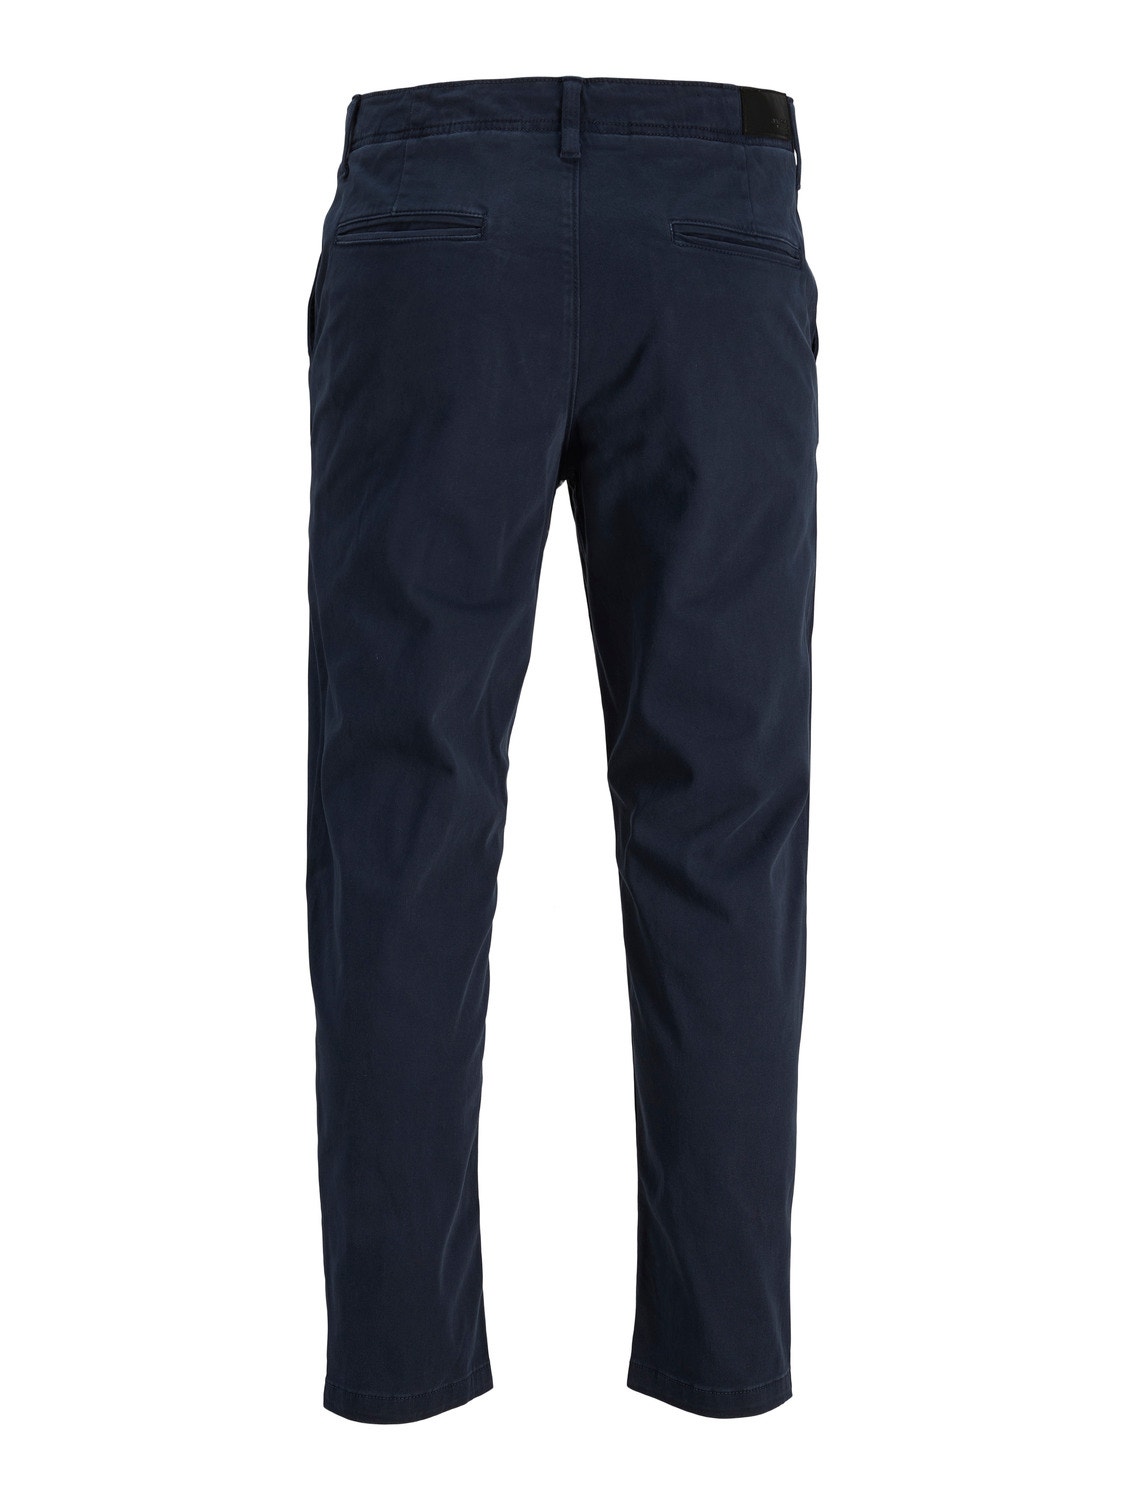 Jack & Jones Tapered Fit Plátěné kalhoty Chino -Navy Blazer - 12242188